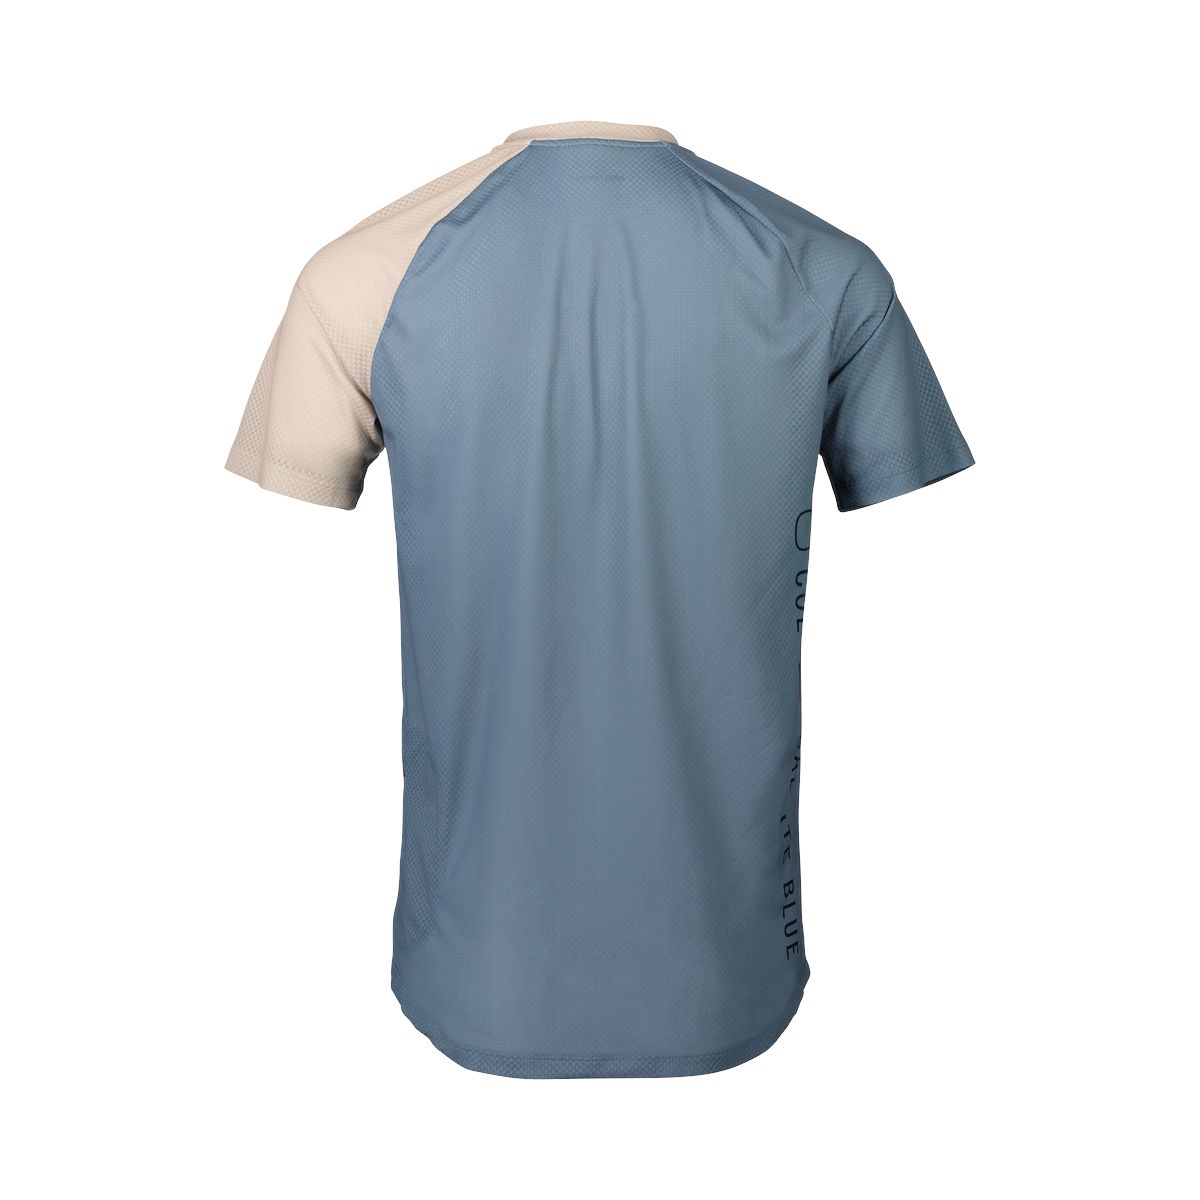 Men's MTB Pure T-shirt Calcite Blue/Light Sandstone Beige 